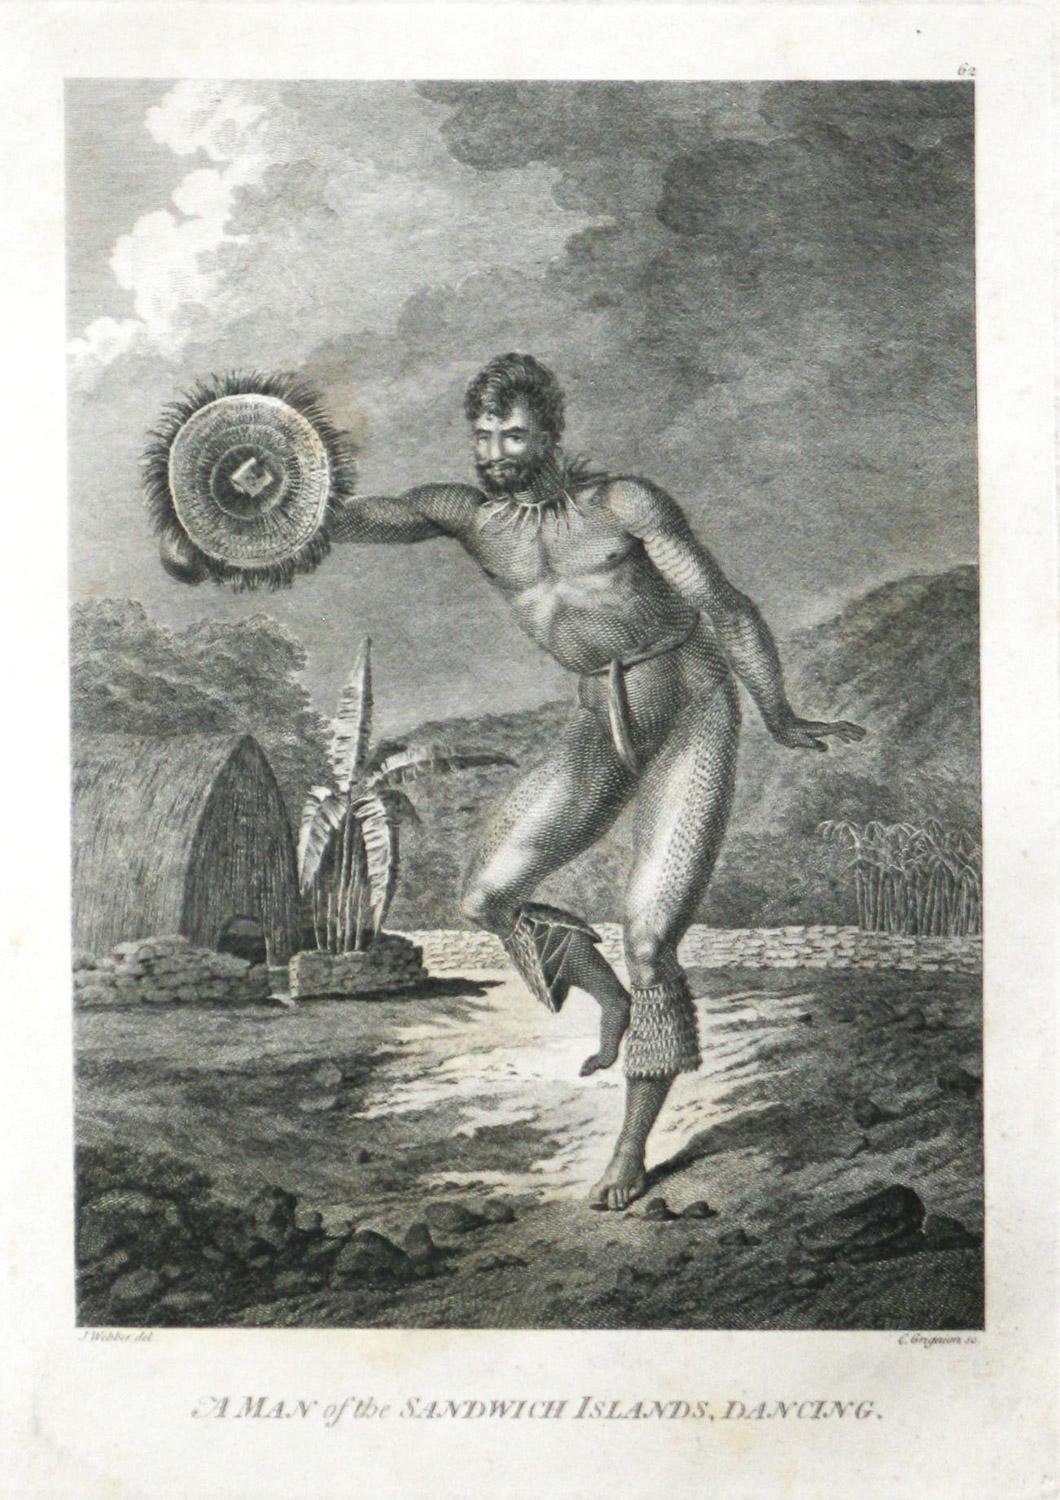 Un homme des îles Sandwich, Danse (Hawaii) de la gravure des voyages du capitaine Cooks